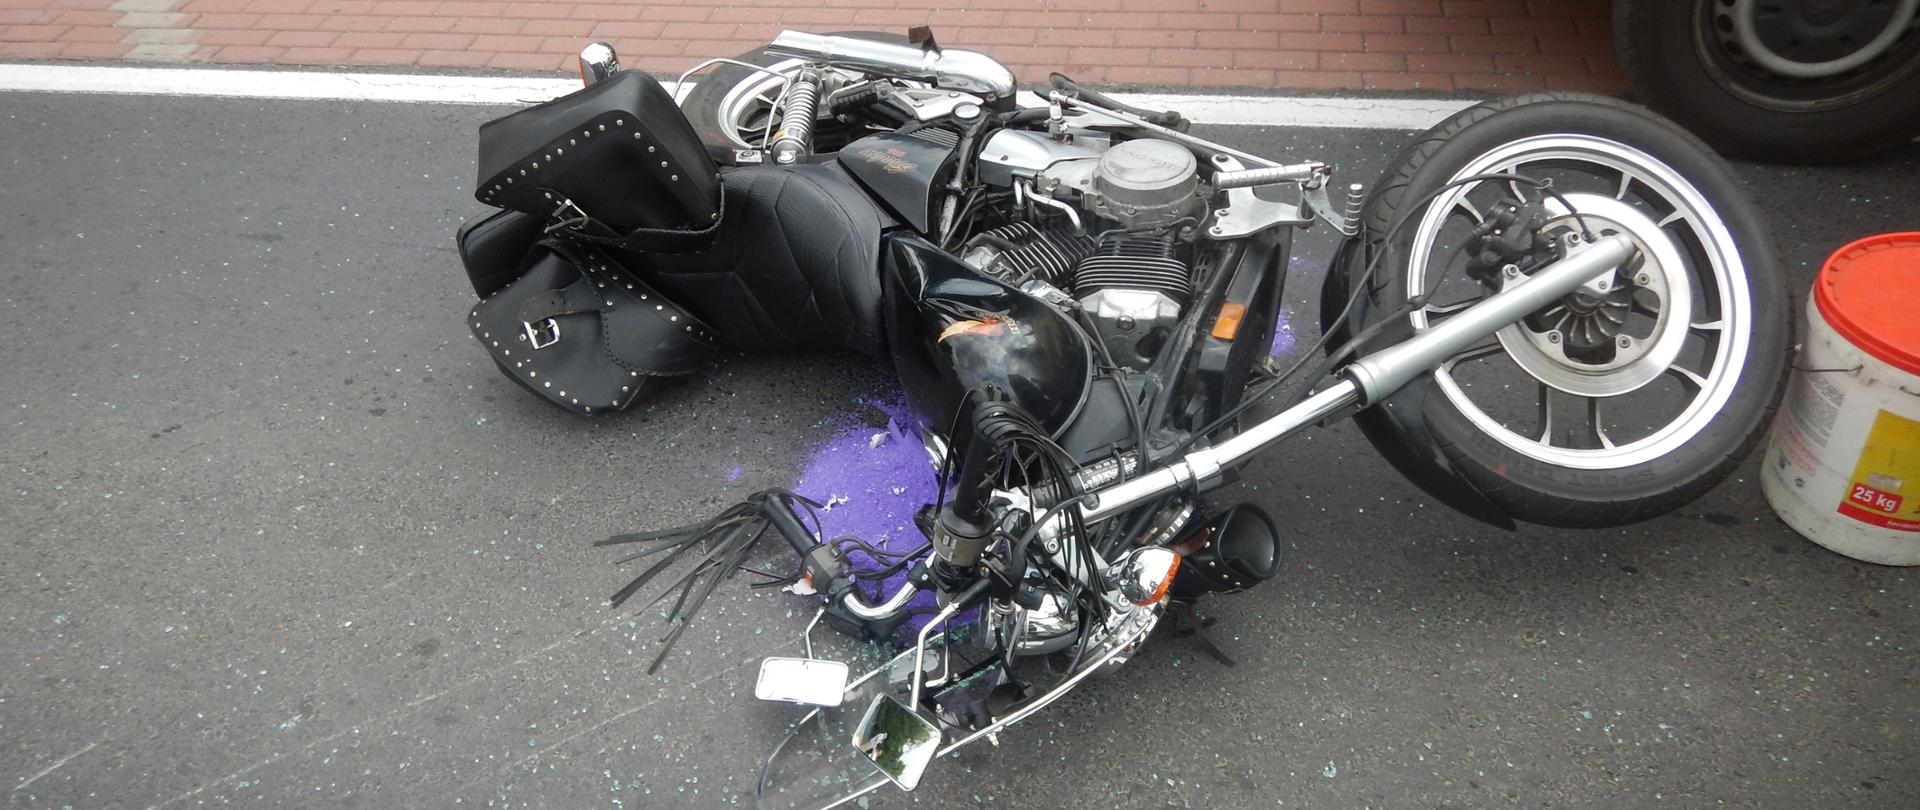 Zdjęcie przedstawia motocykl, który brał udział w zdarzeniu.